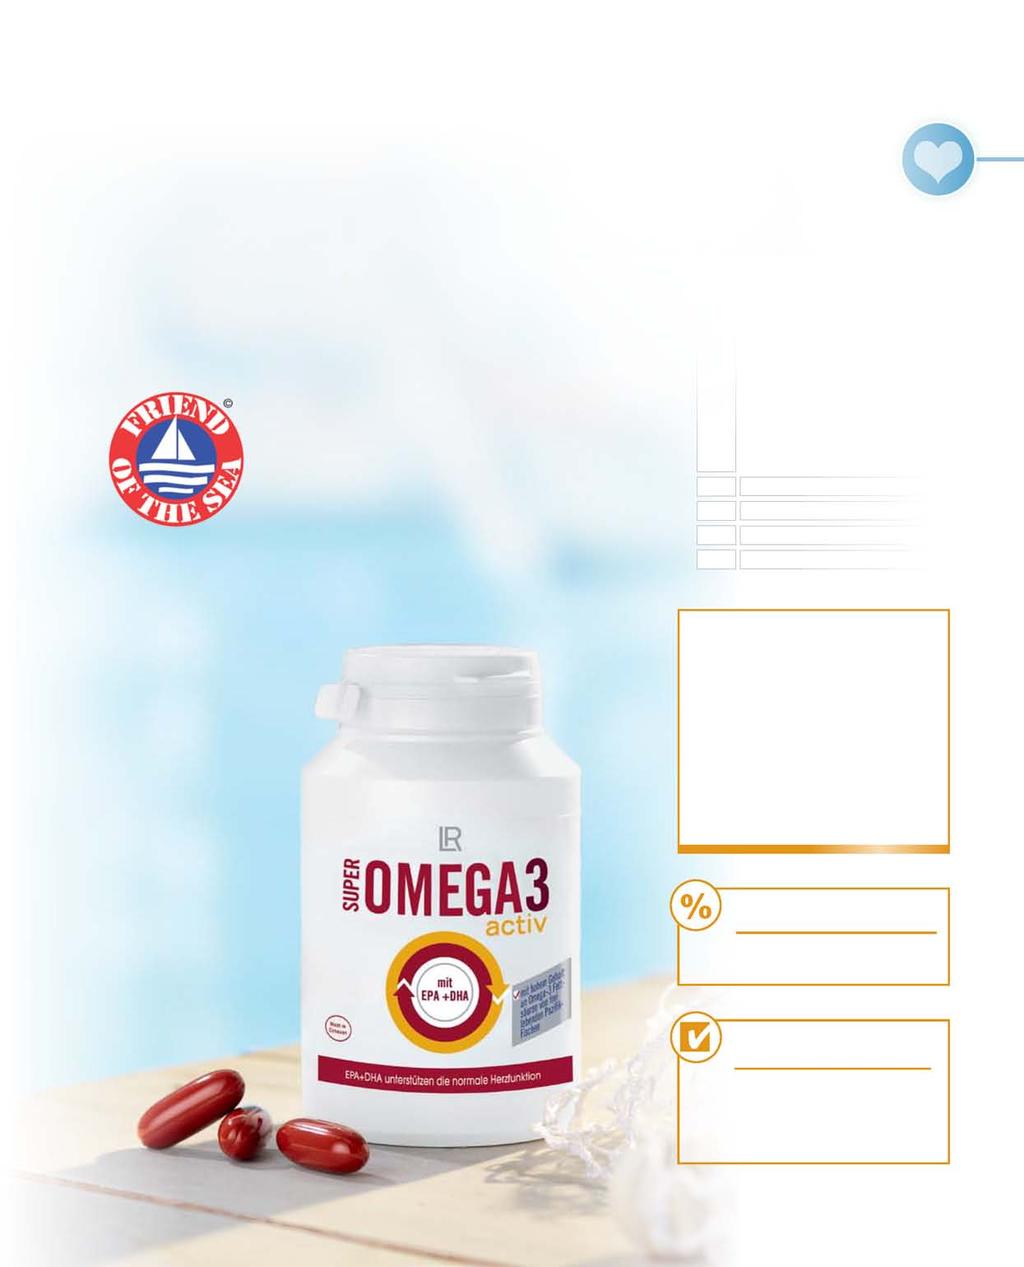 Omega 3 voor de gezondheid van het hart De Omega-3-vetzuren EPA (eicosapentaeenzuur) en DHA (docosahexaeenzuur) zijn belangrijk voor het gezond houden van de hartfunctie 1.